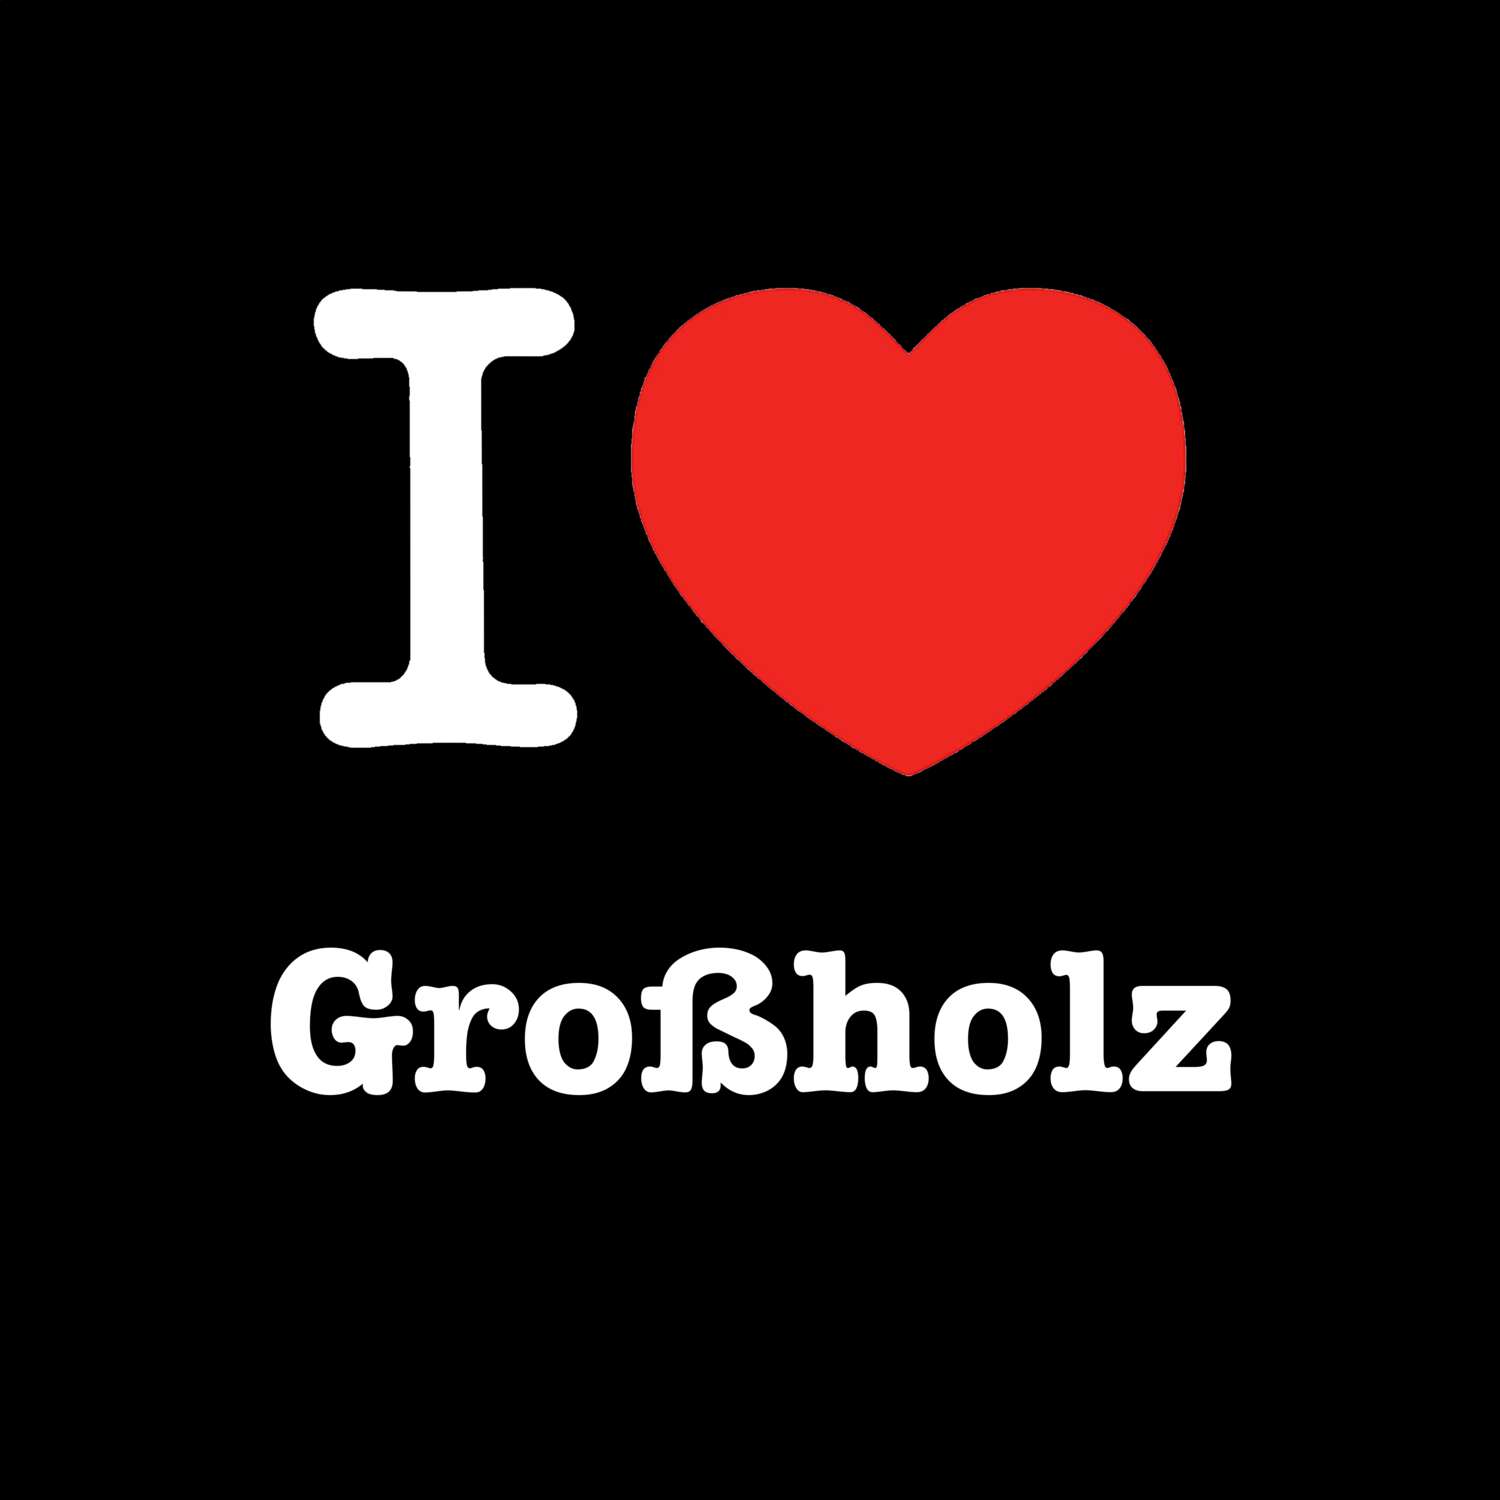 Großholz T-Shirt »I love«